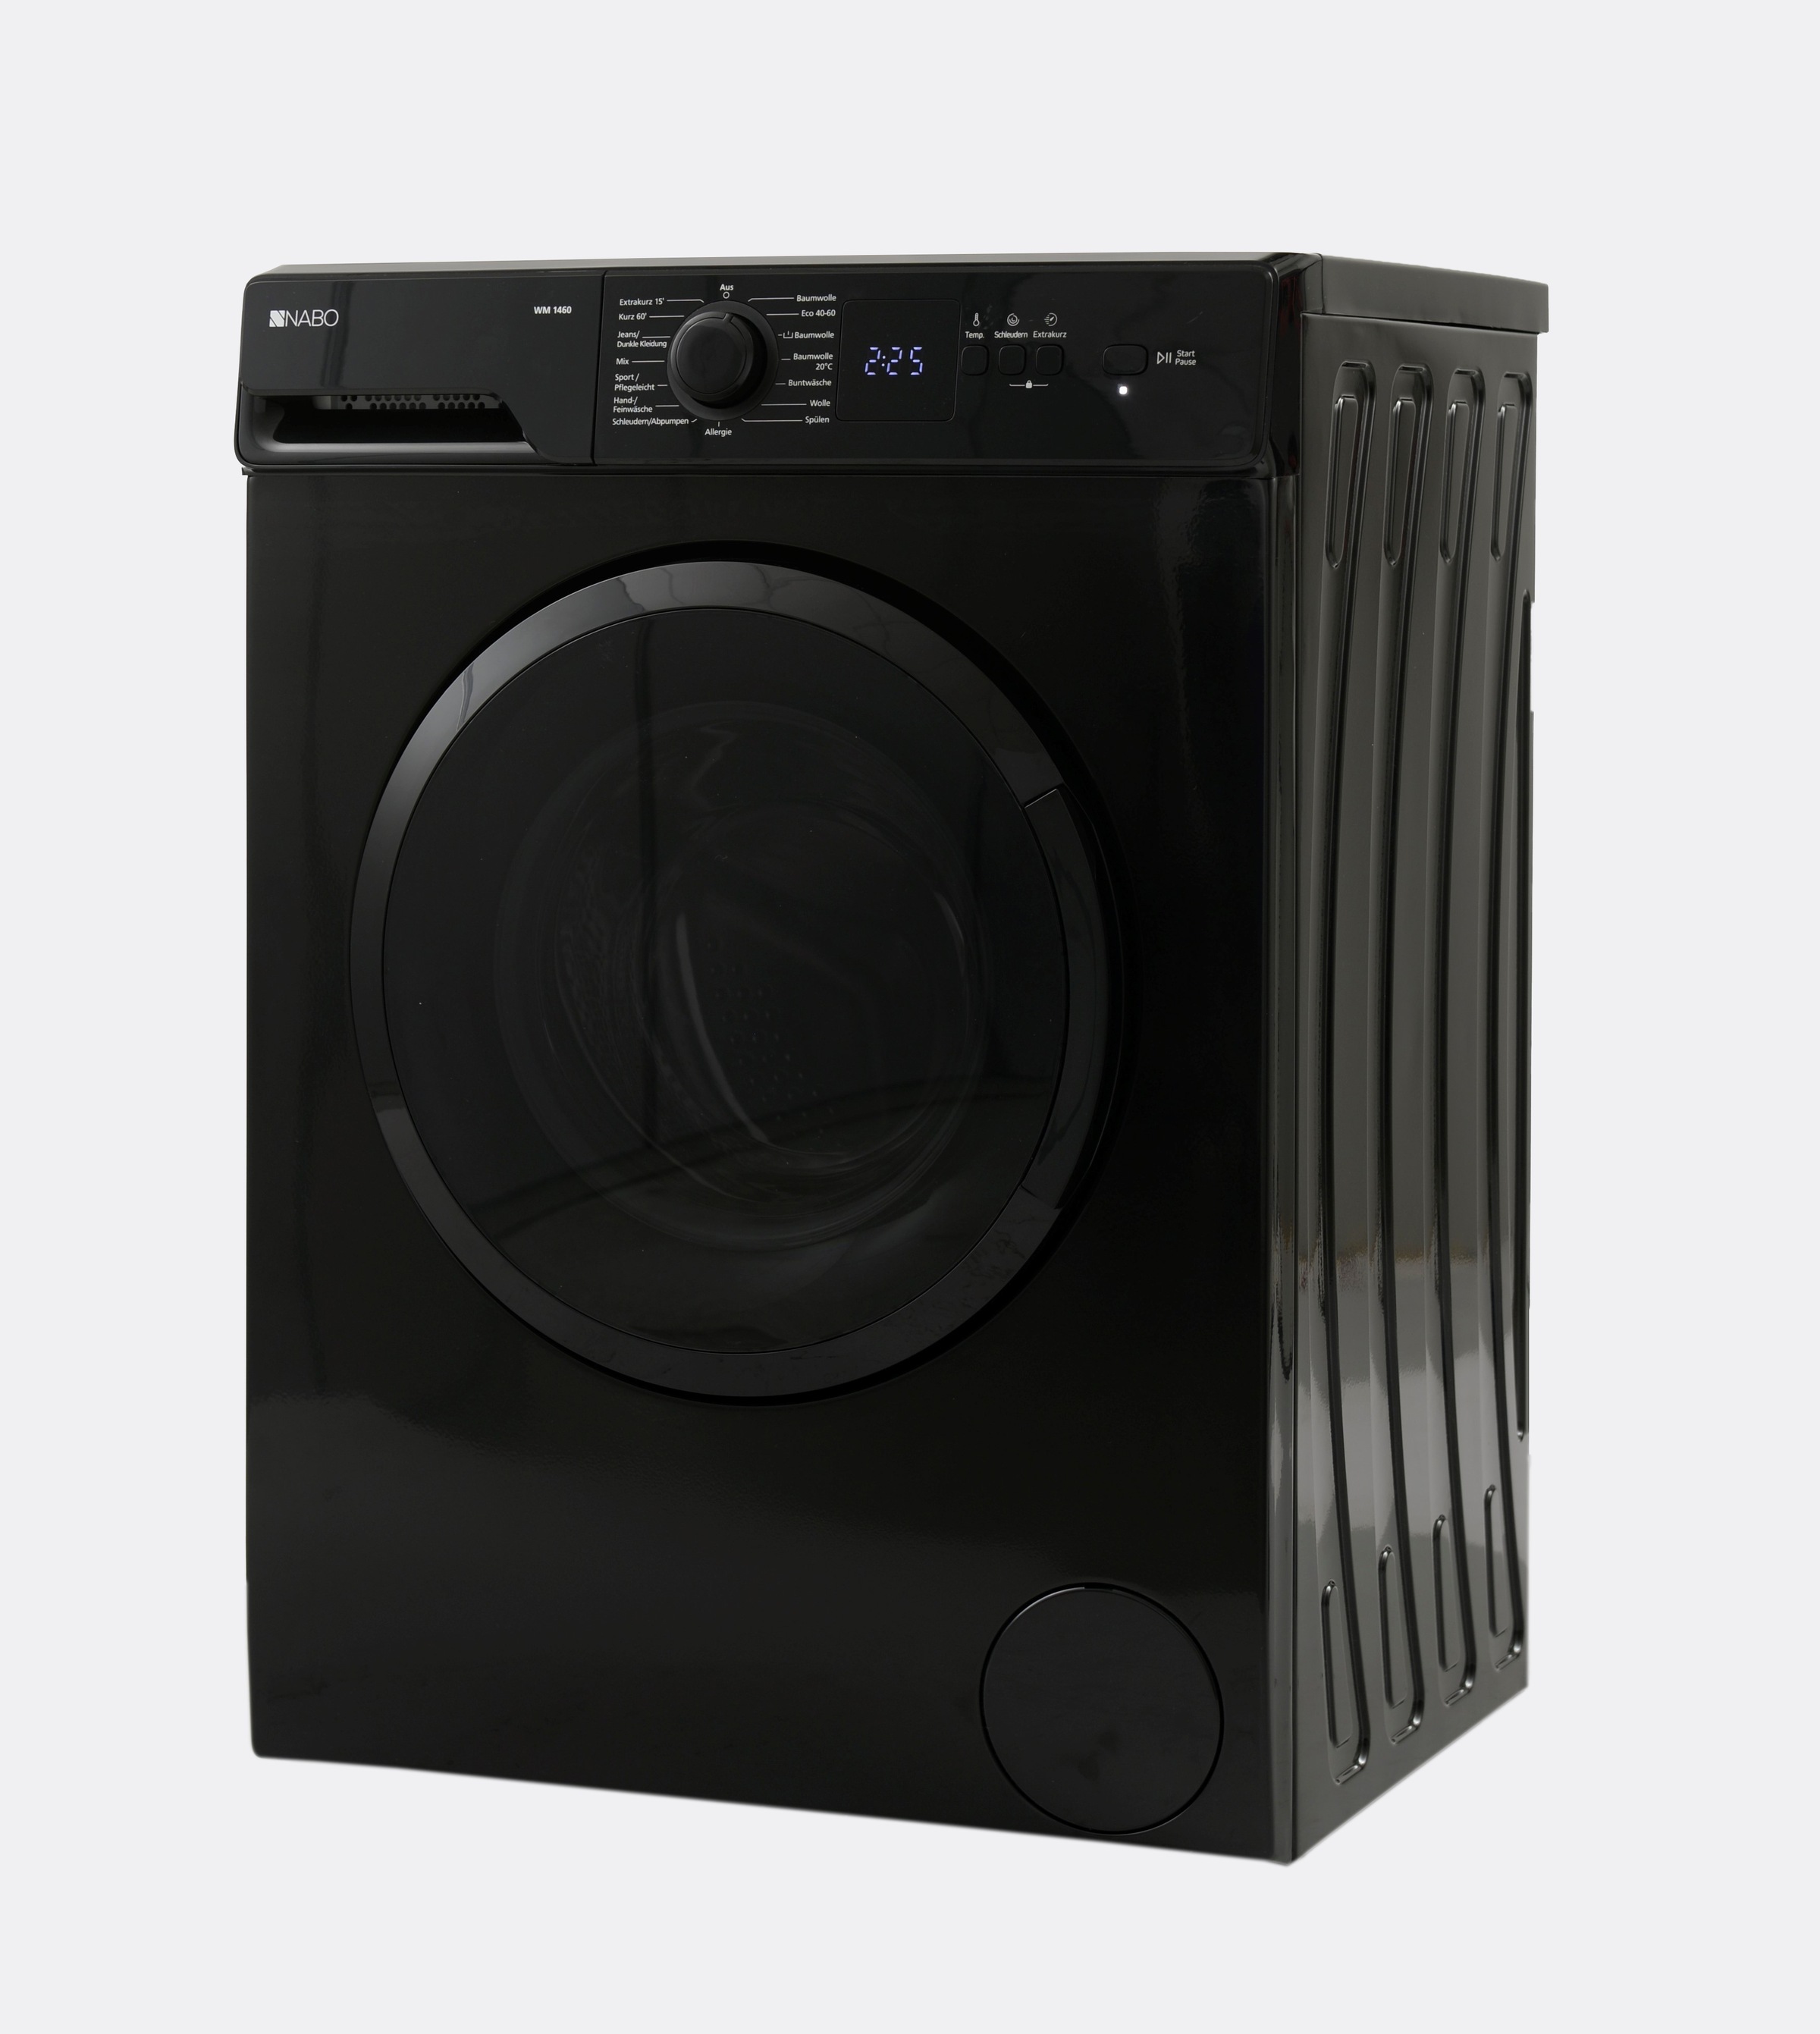 NABO Waschmaschine »Waschvollautomat«, WM 1460, 7 kg, 1400 U/min jetzt im  OTTO Online Shop